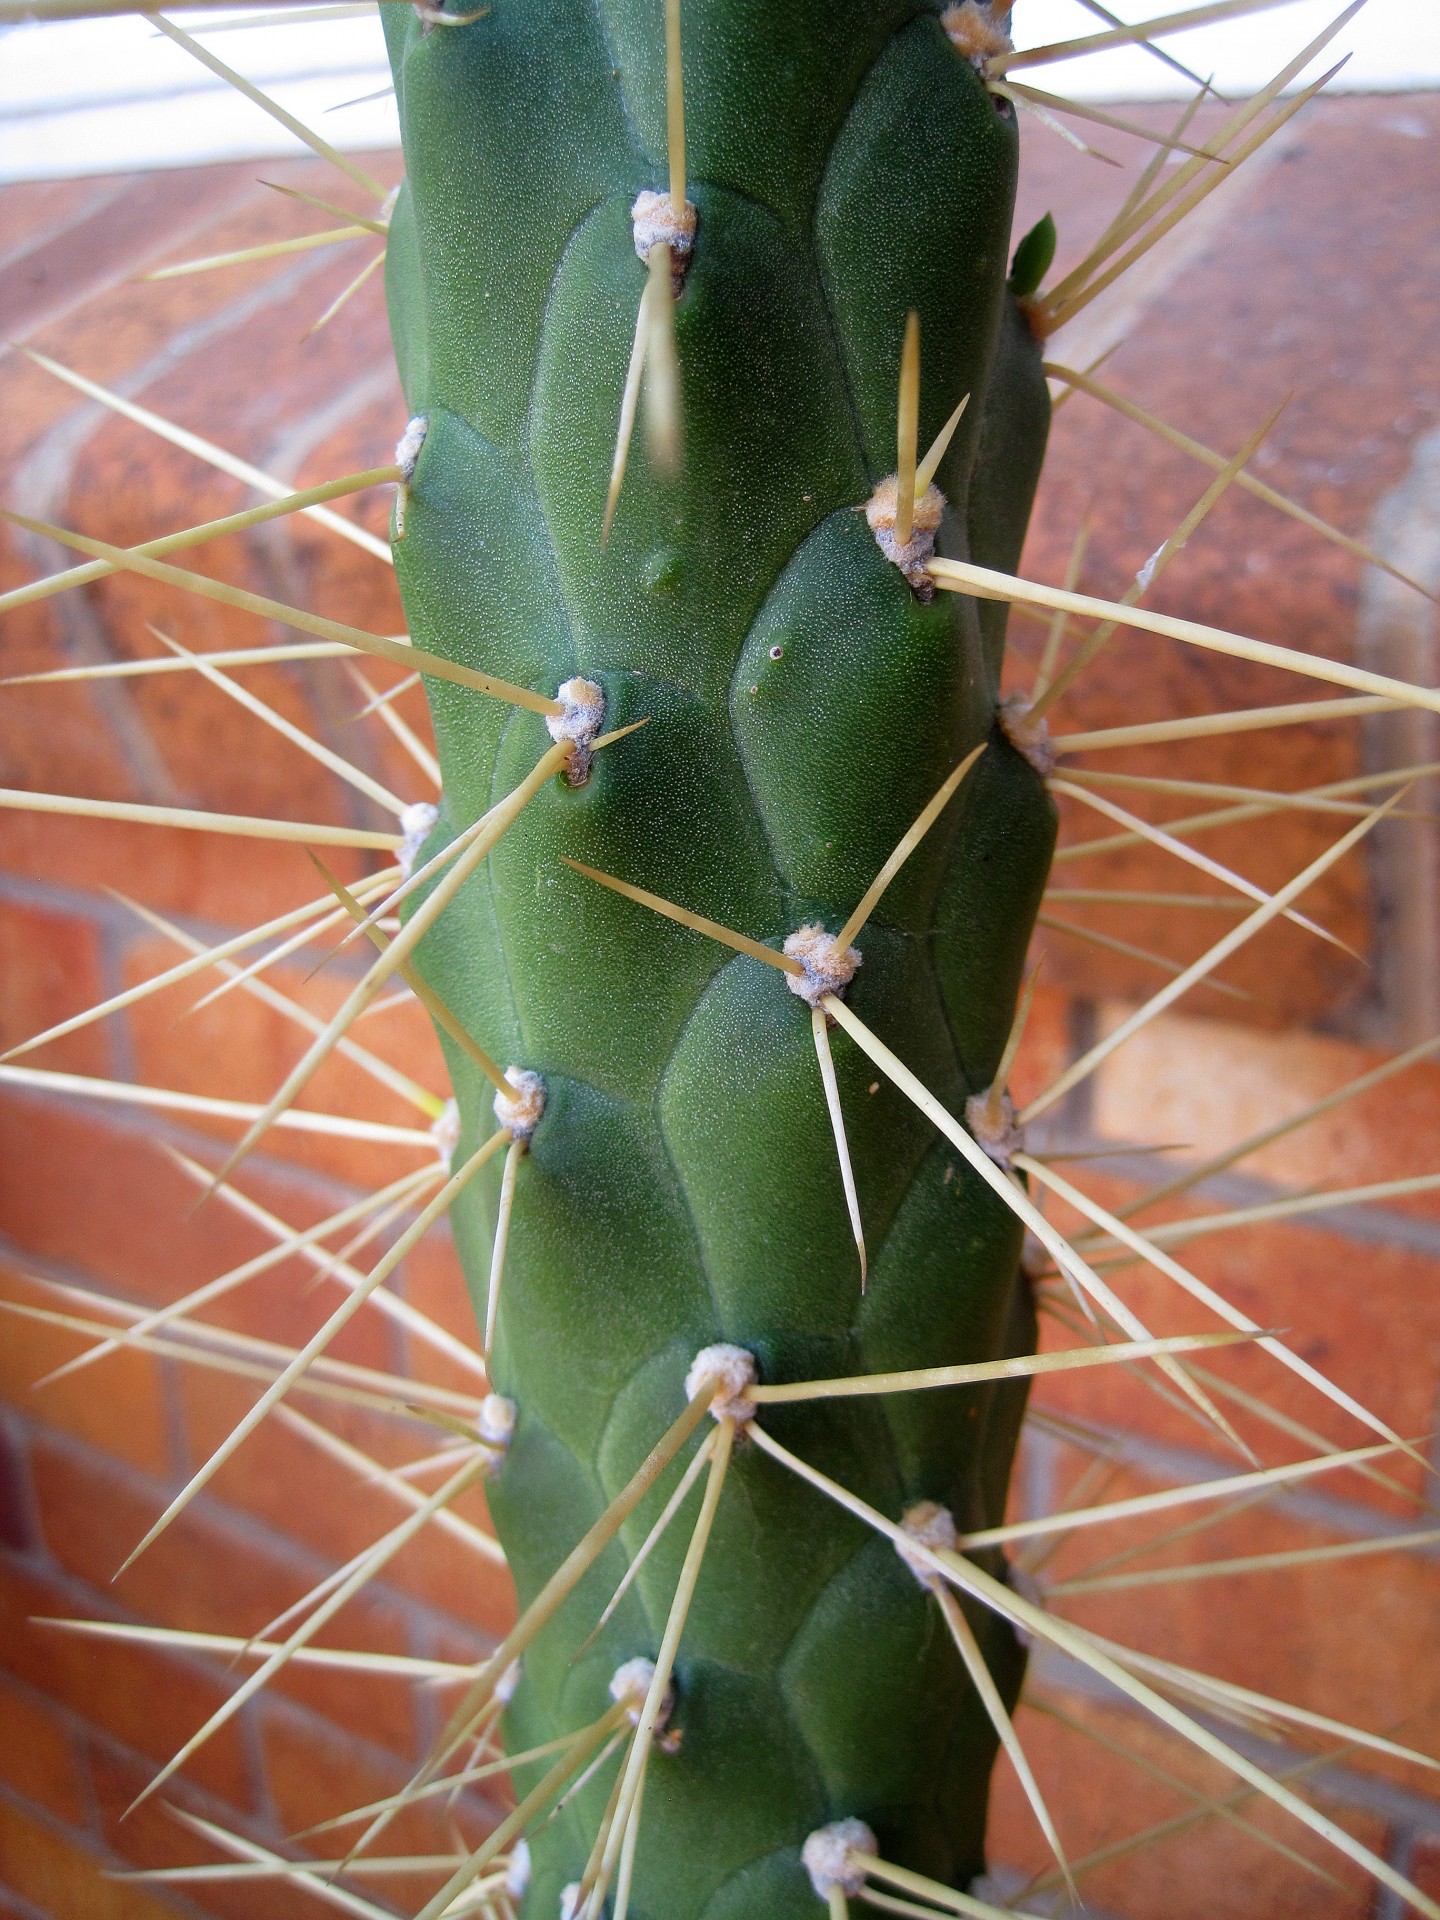 Spini cactus close